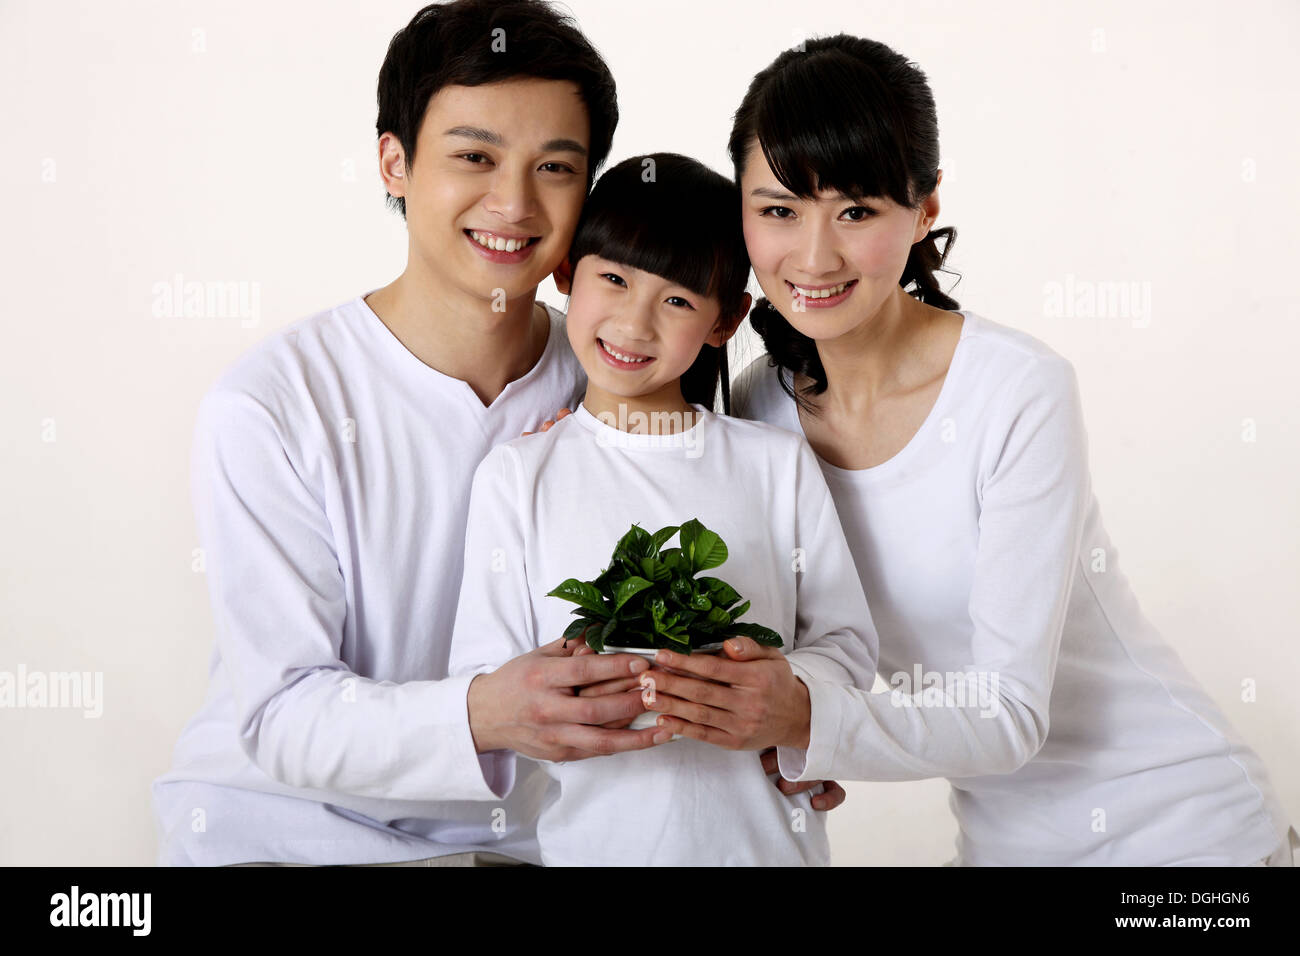 La familia de Asia oriental con un niño abrazando y sosteniendo la planta verde, sonriendo, mirando a la cámara Foto de stock